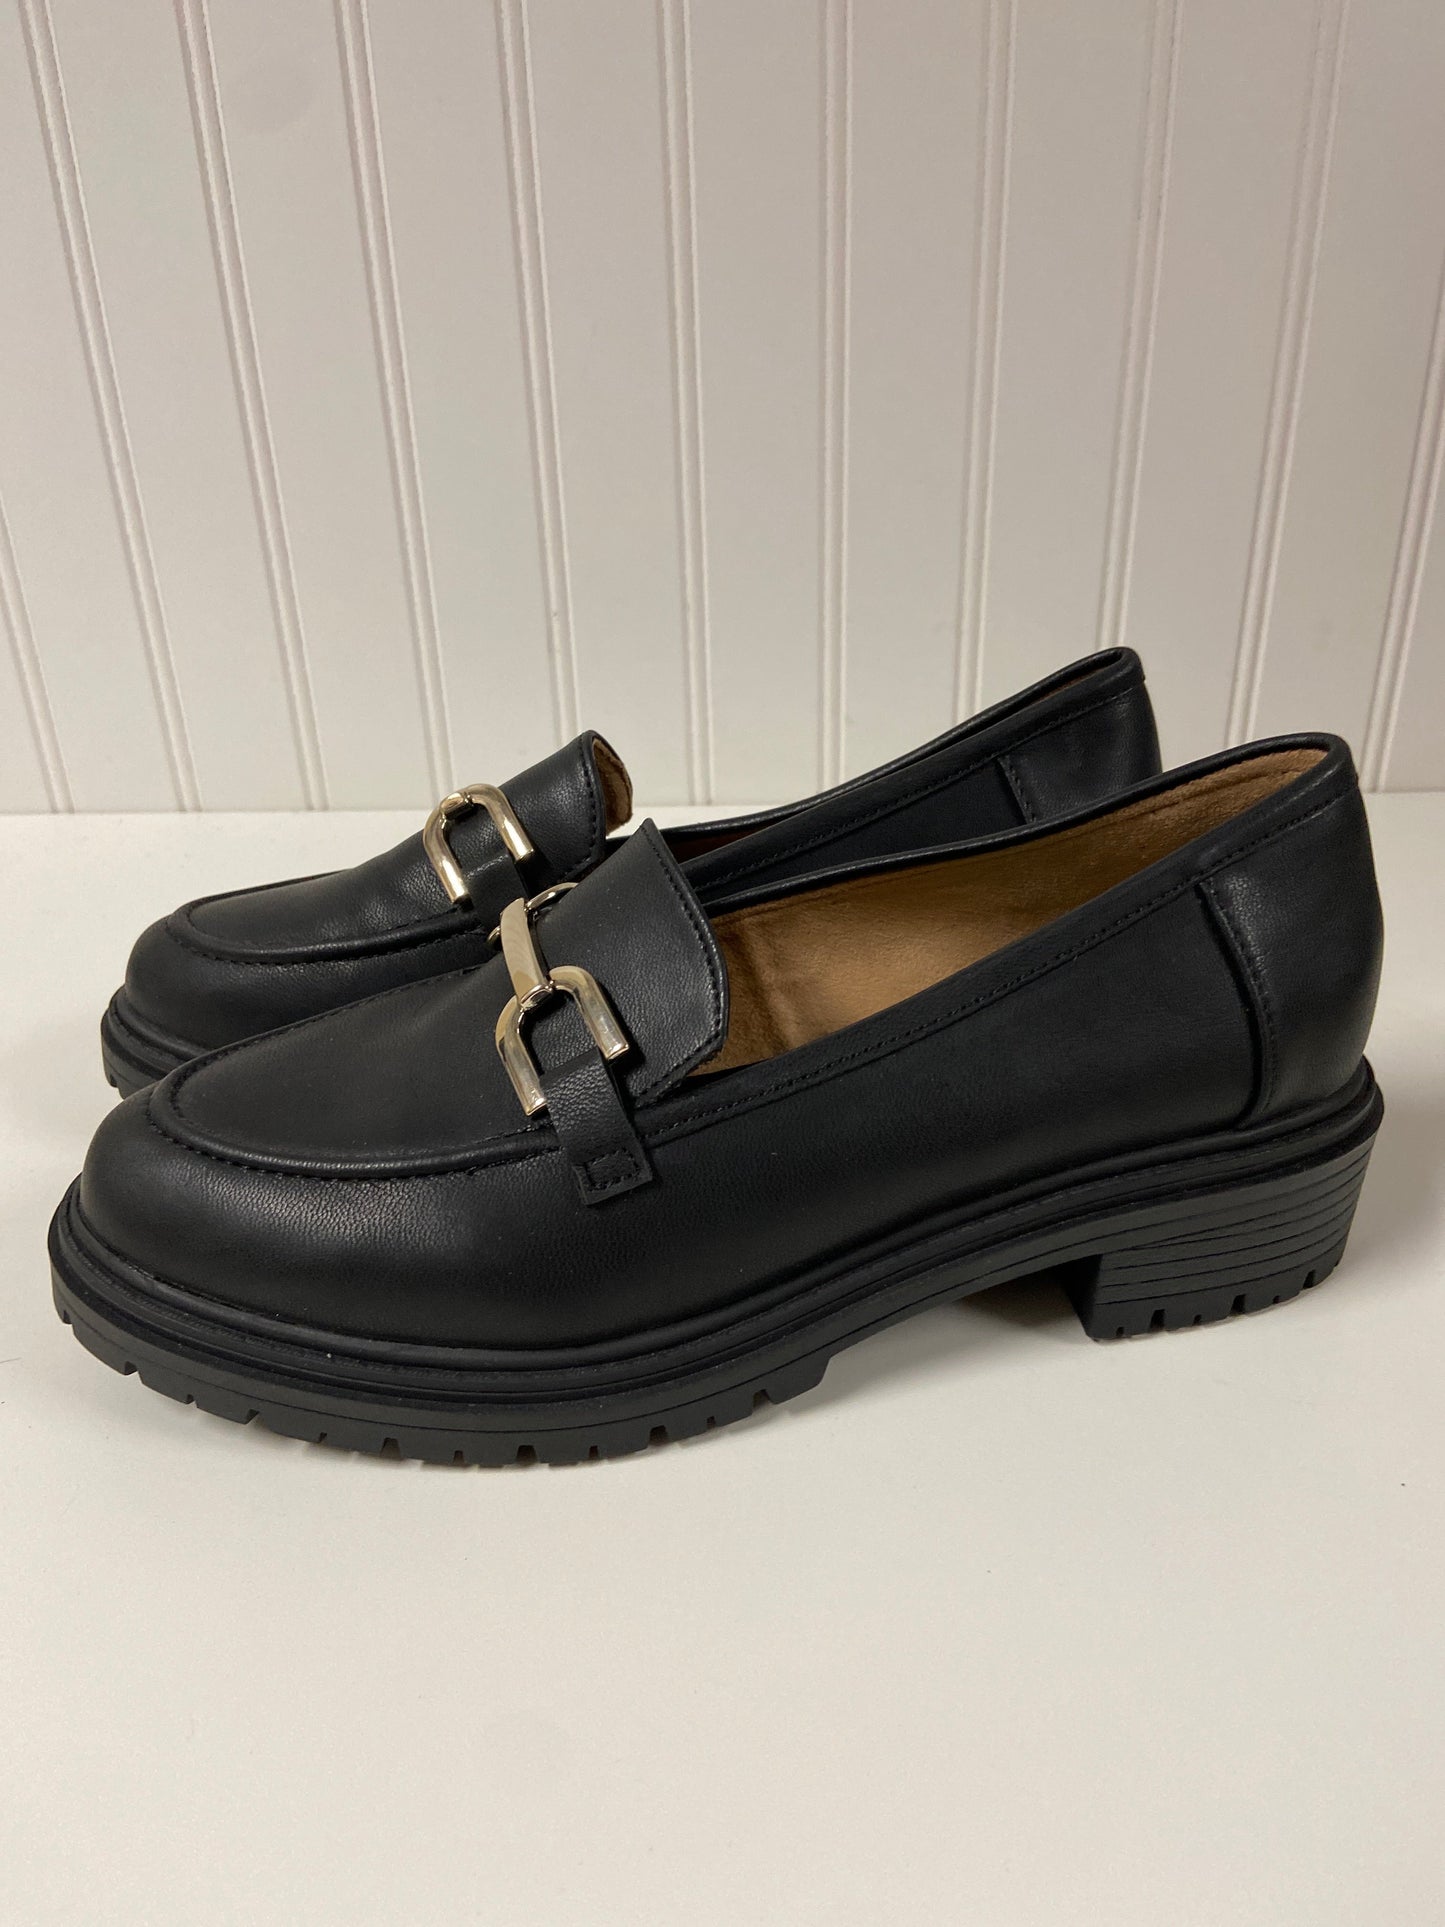 Black Shoes Flats Rachel Zoe, Size 8